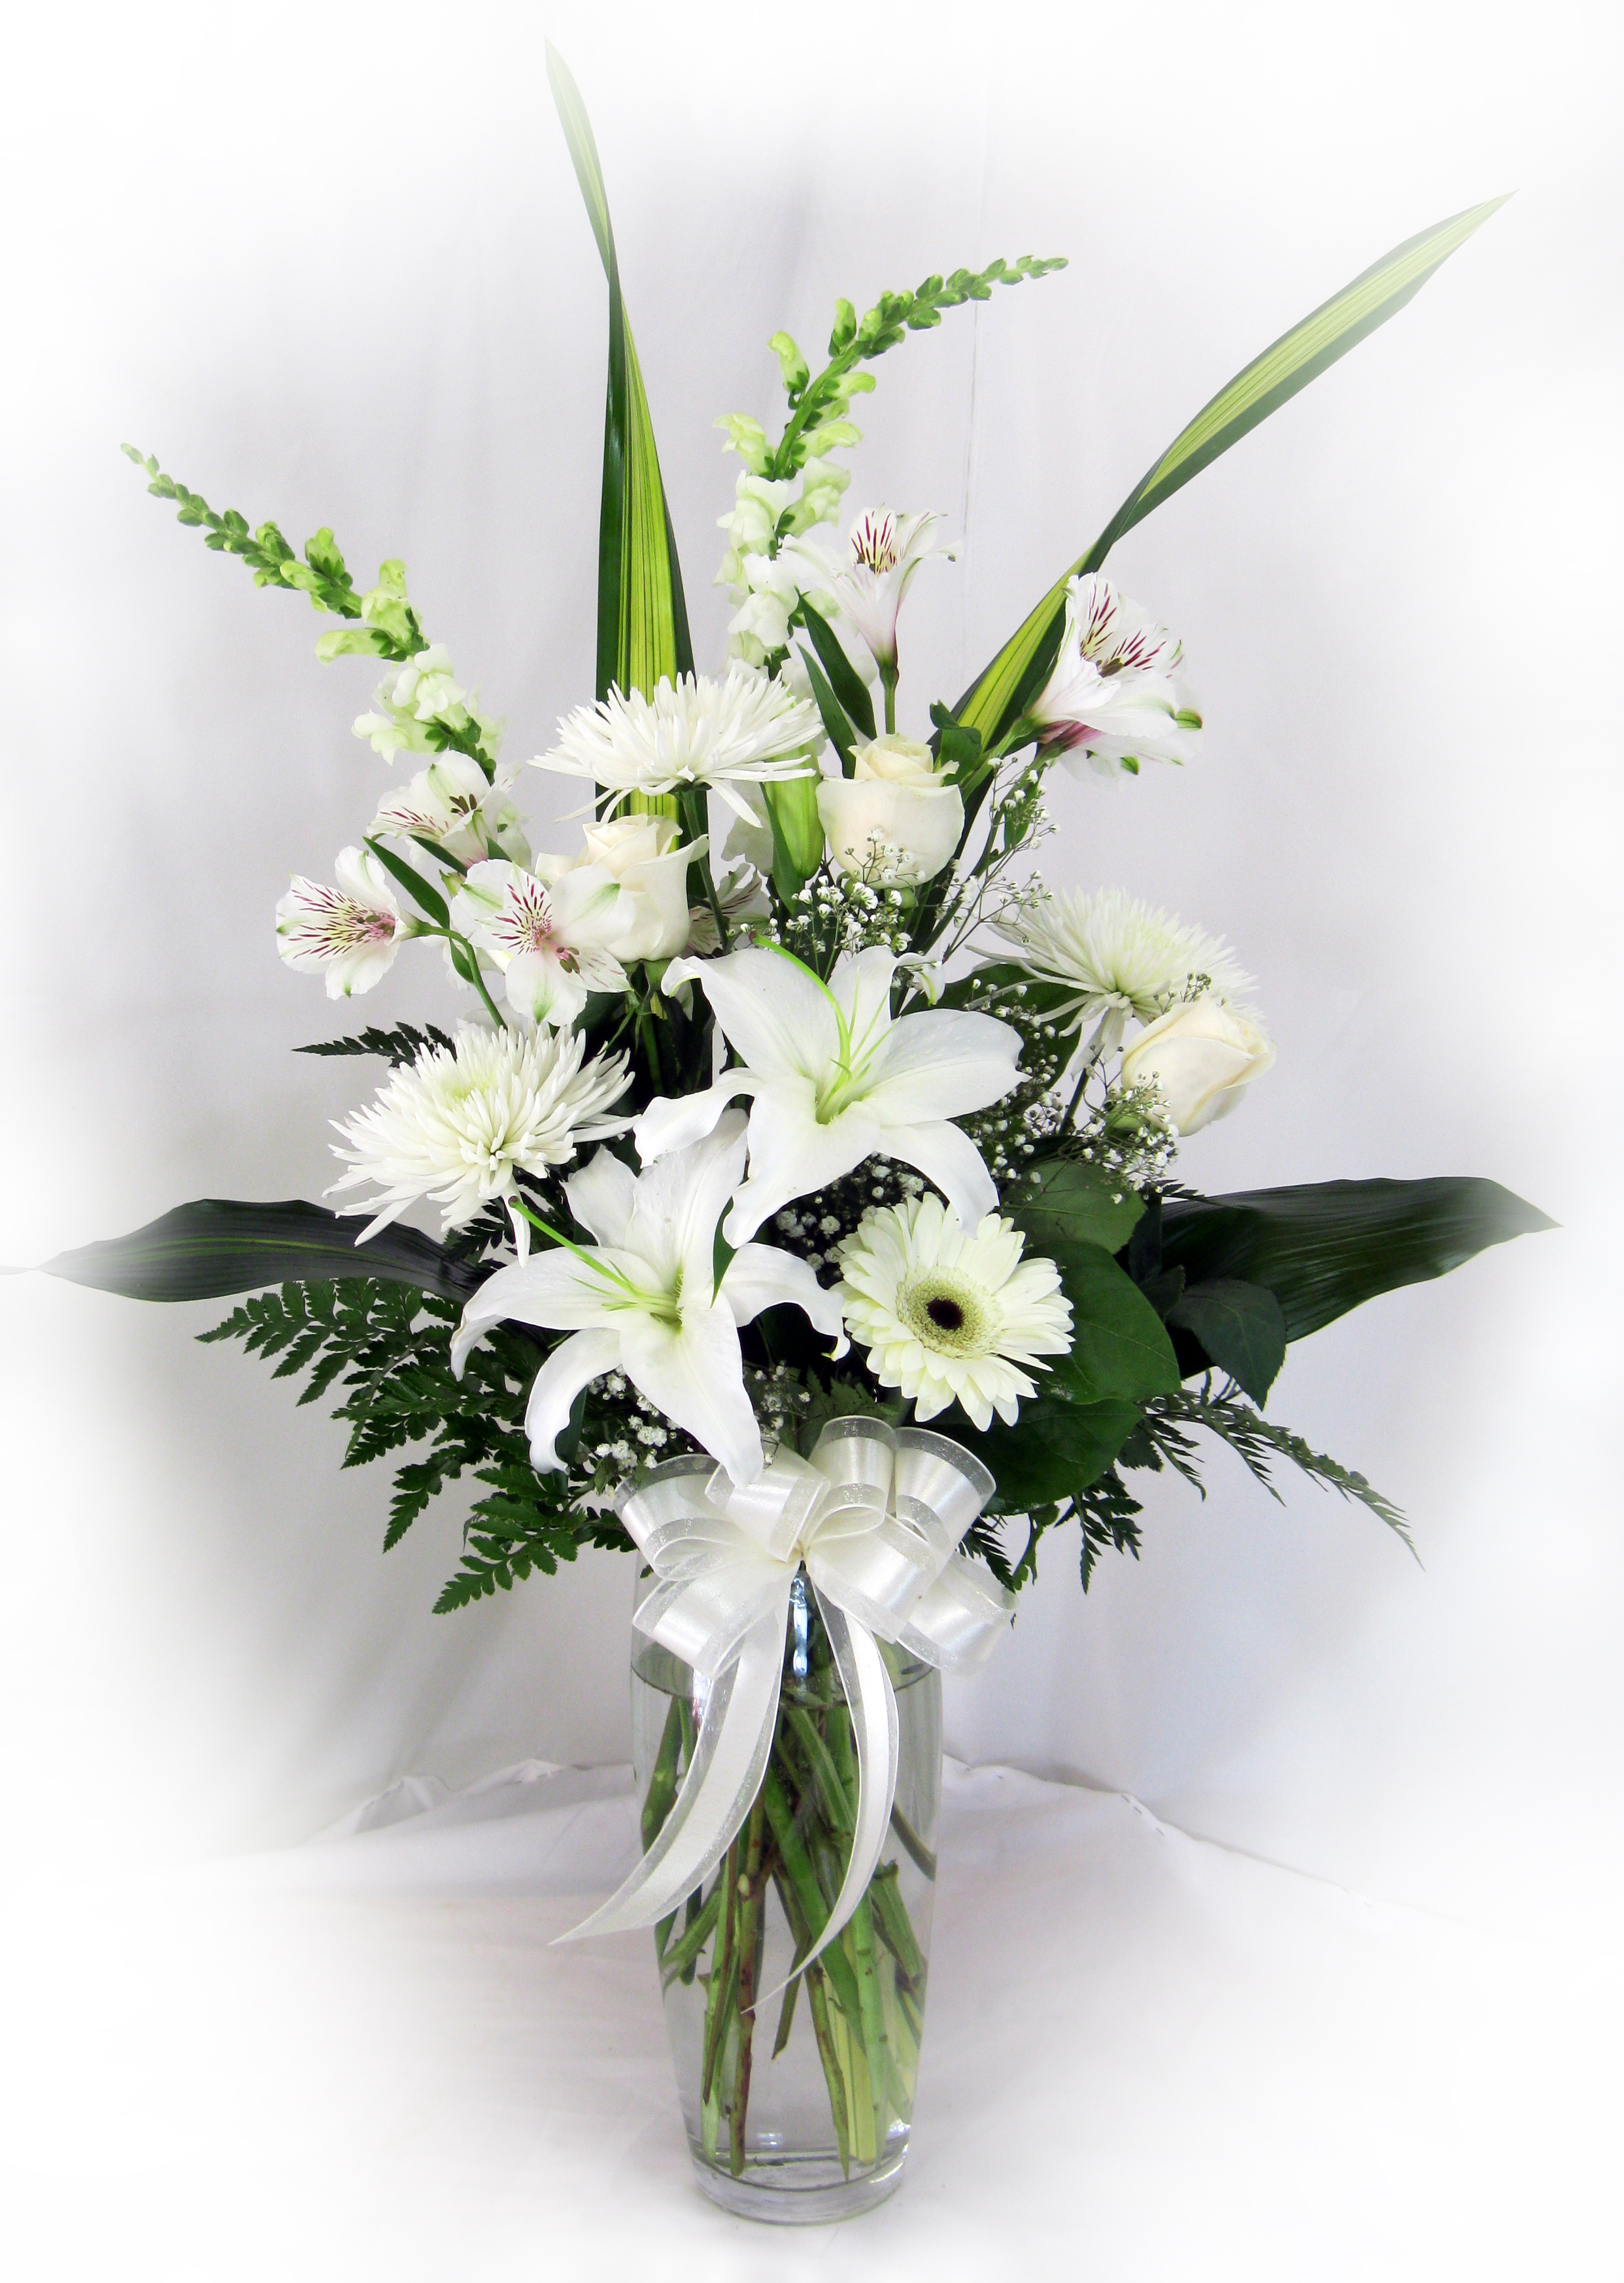 Vase de fleurs variées blanches - Sylvie - Maison Montcalm Fleuriste